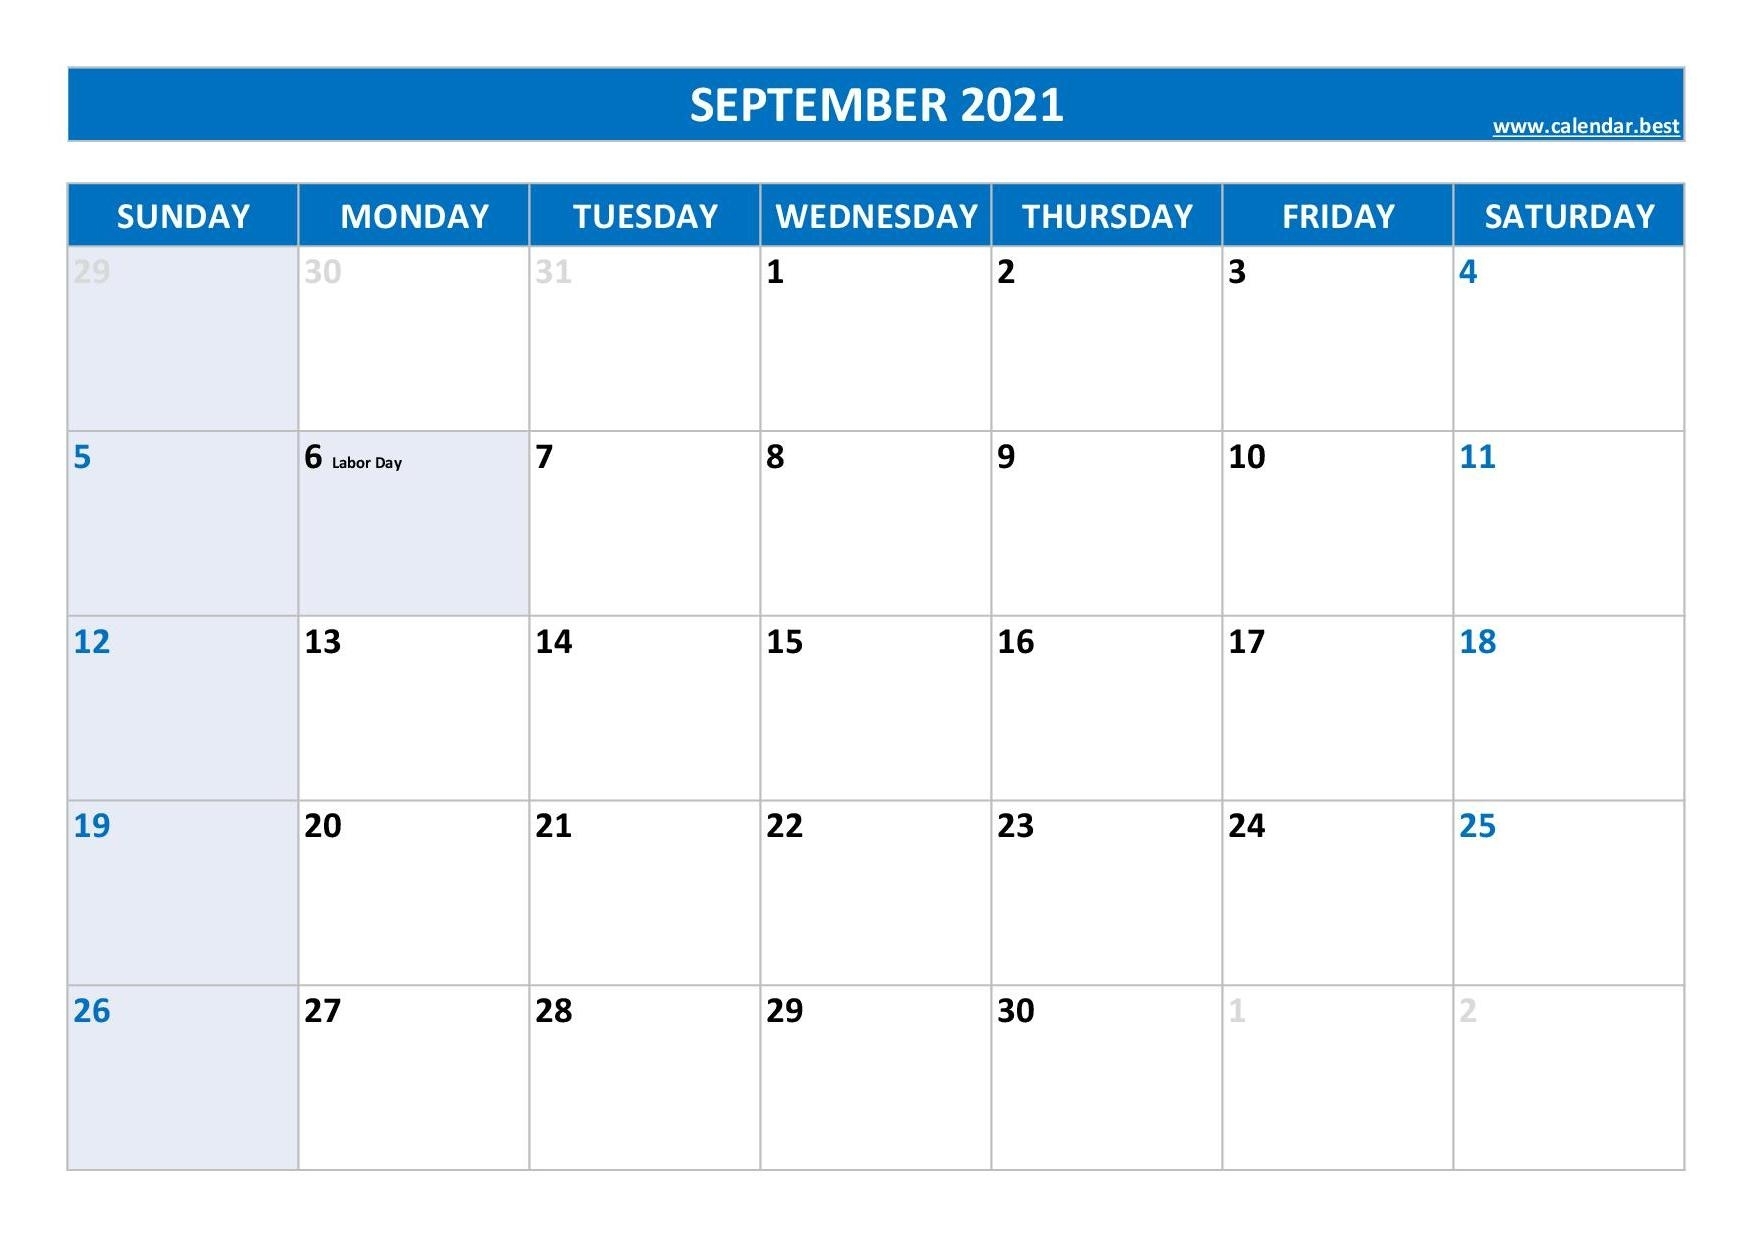 September 2021 Calendar -Calendar.best Blank Calendar Pages September 2021